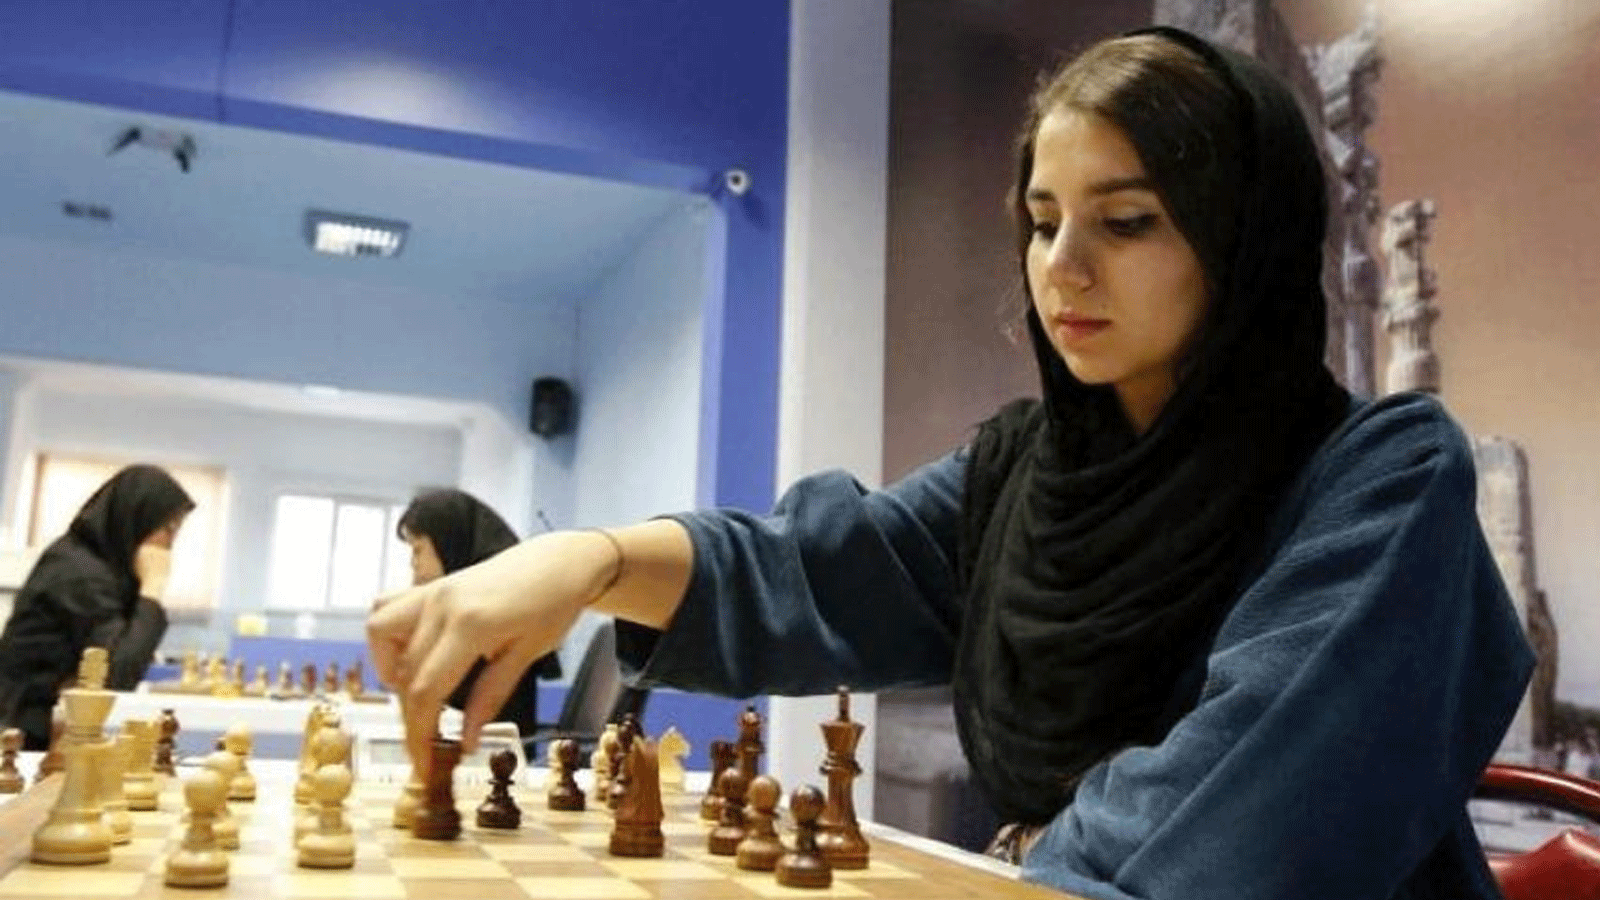  صورة أرشيفية لسارة خادم الشريعة خلال مشاركتها في مسابقة شطرنج في طهران عام 2016.